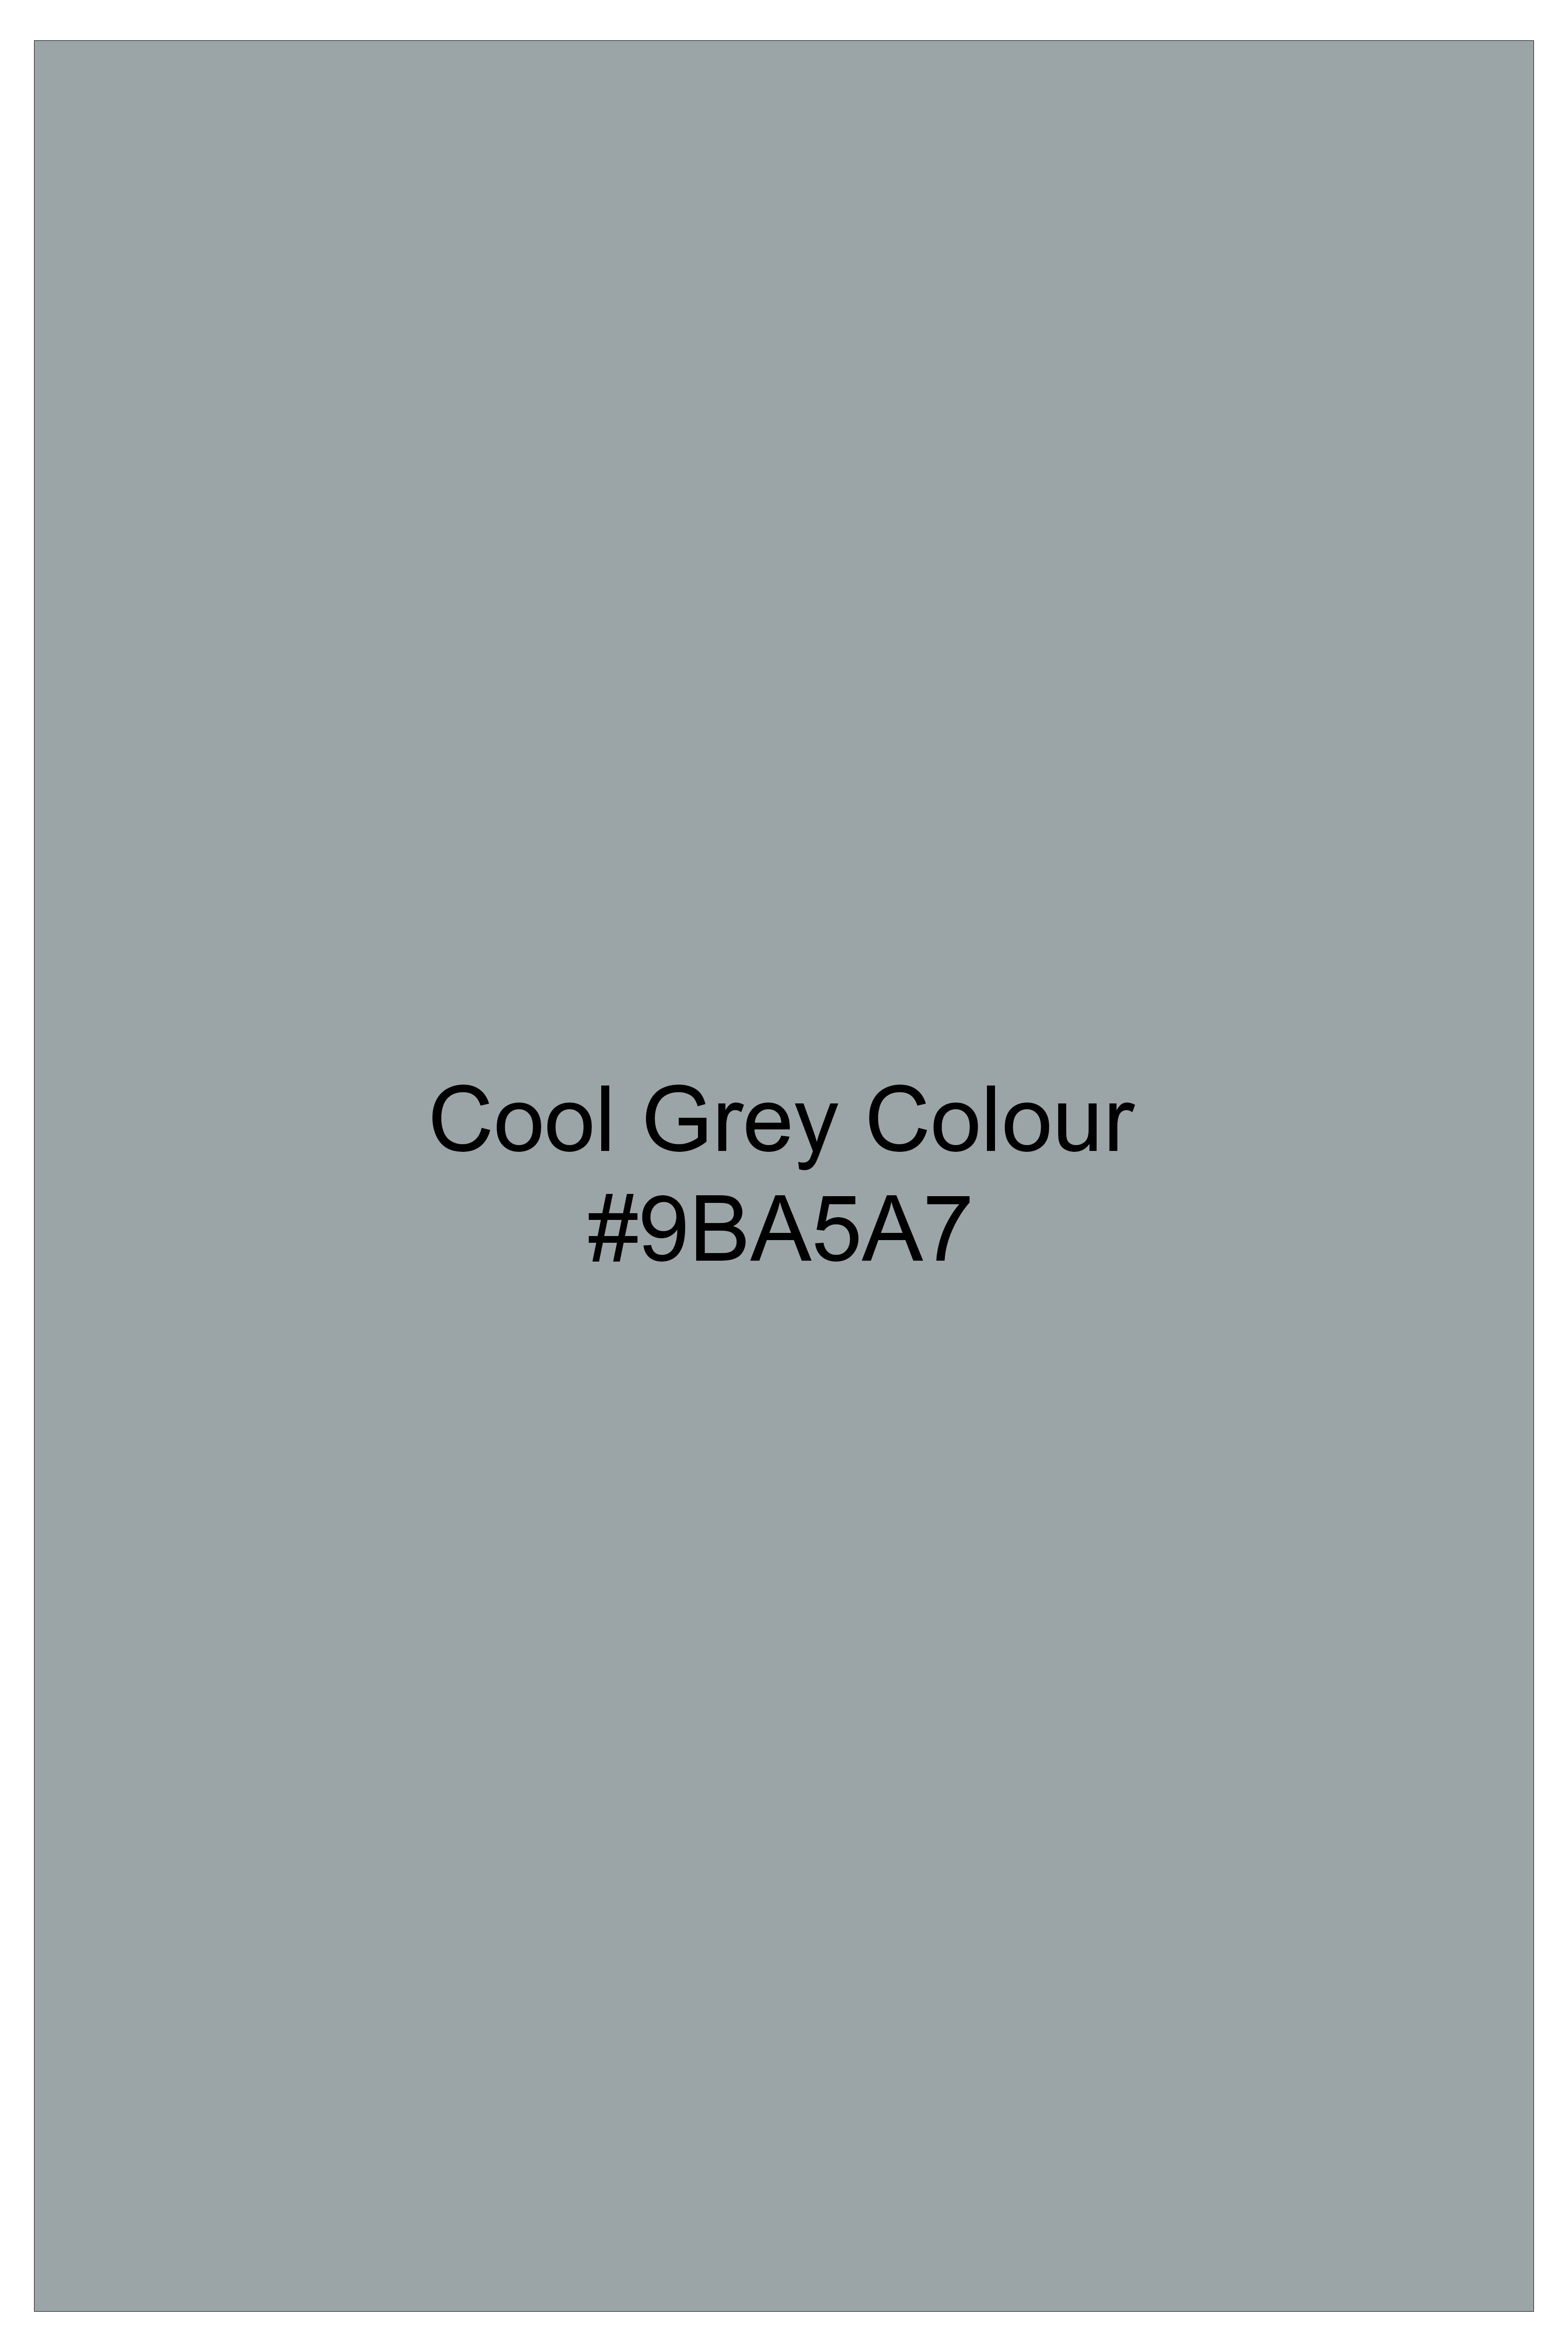 Cool Gray Luxurious Linen Shirt